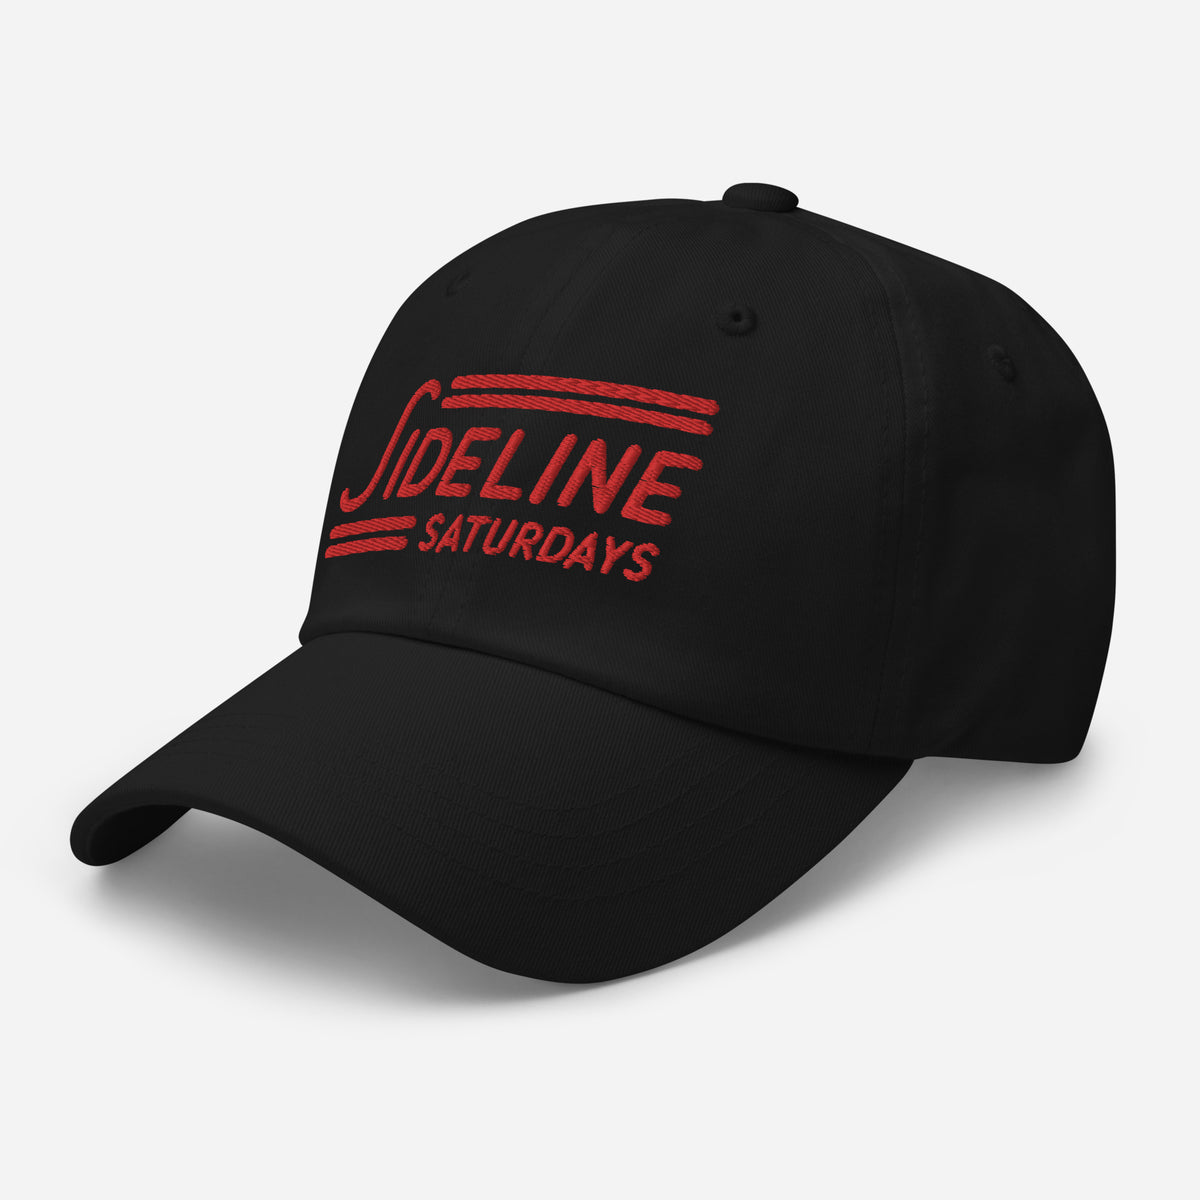 Ballcap - Sideline